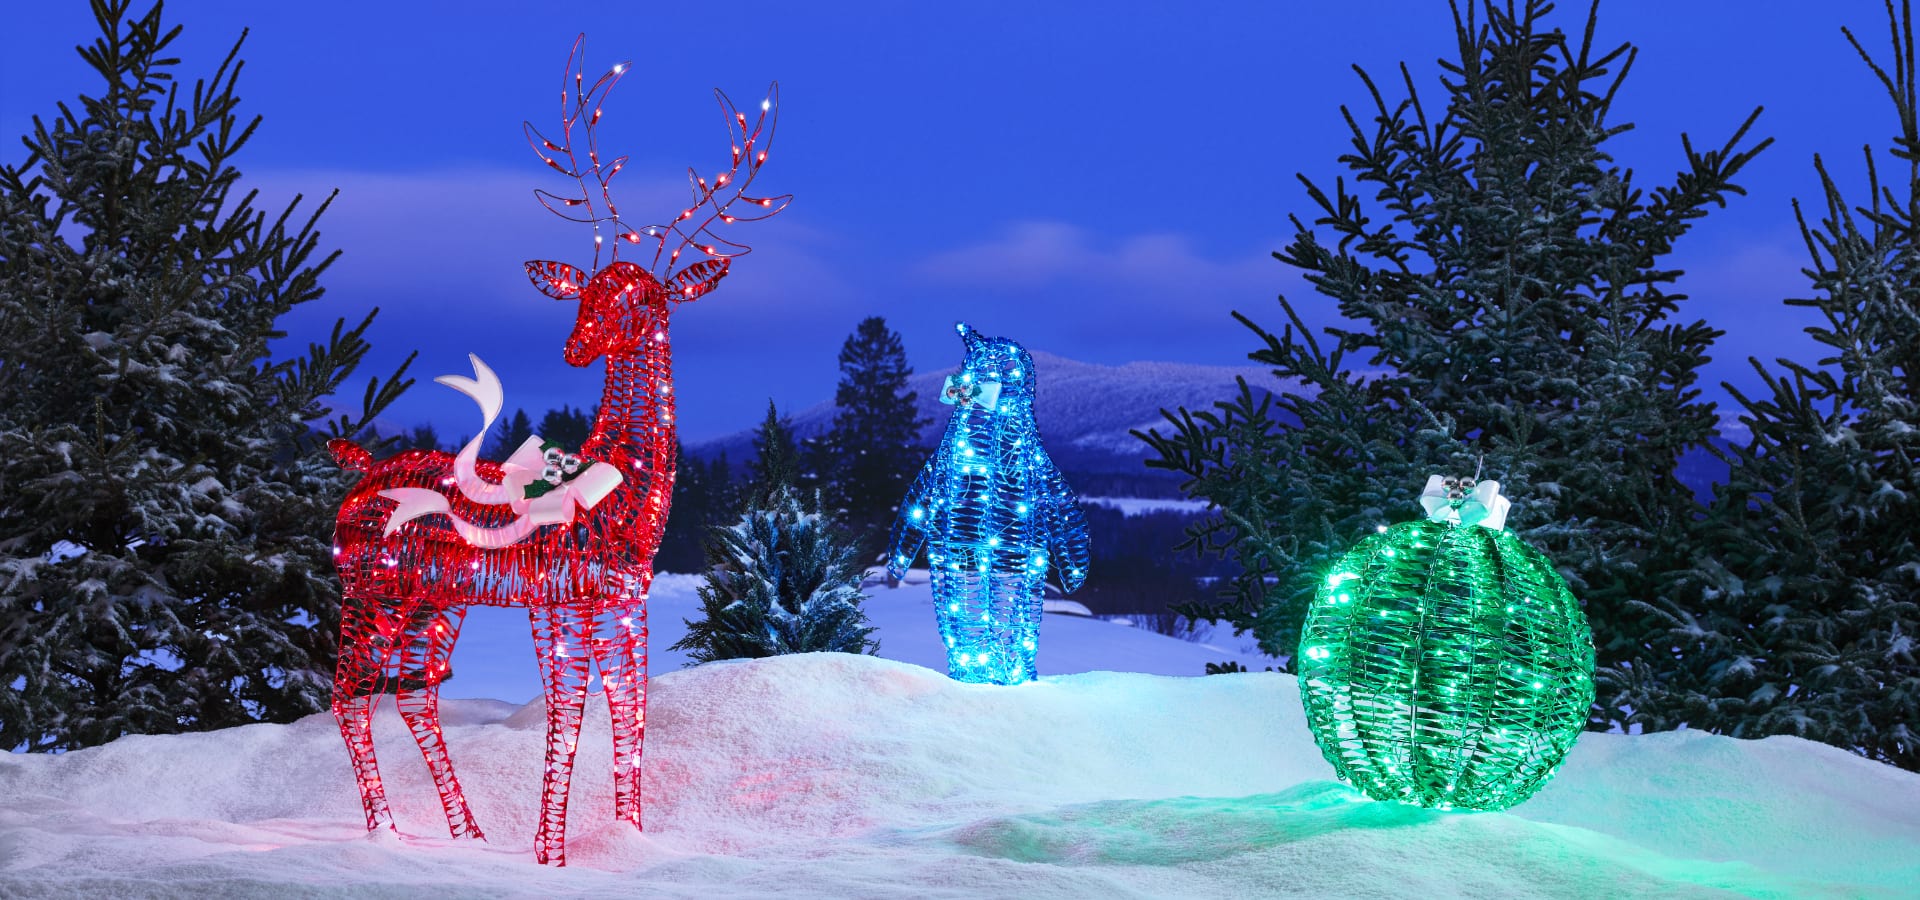 Des figurines illuminées en fil métallique, y compris un renne, un ours et un ornement, sur une pelouse enneigée